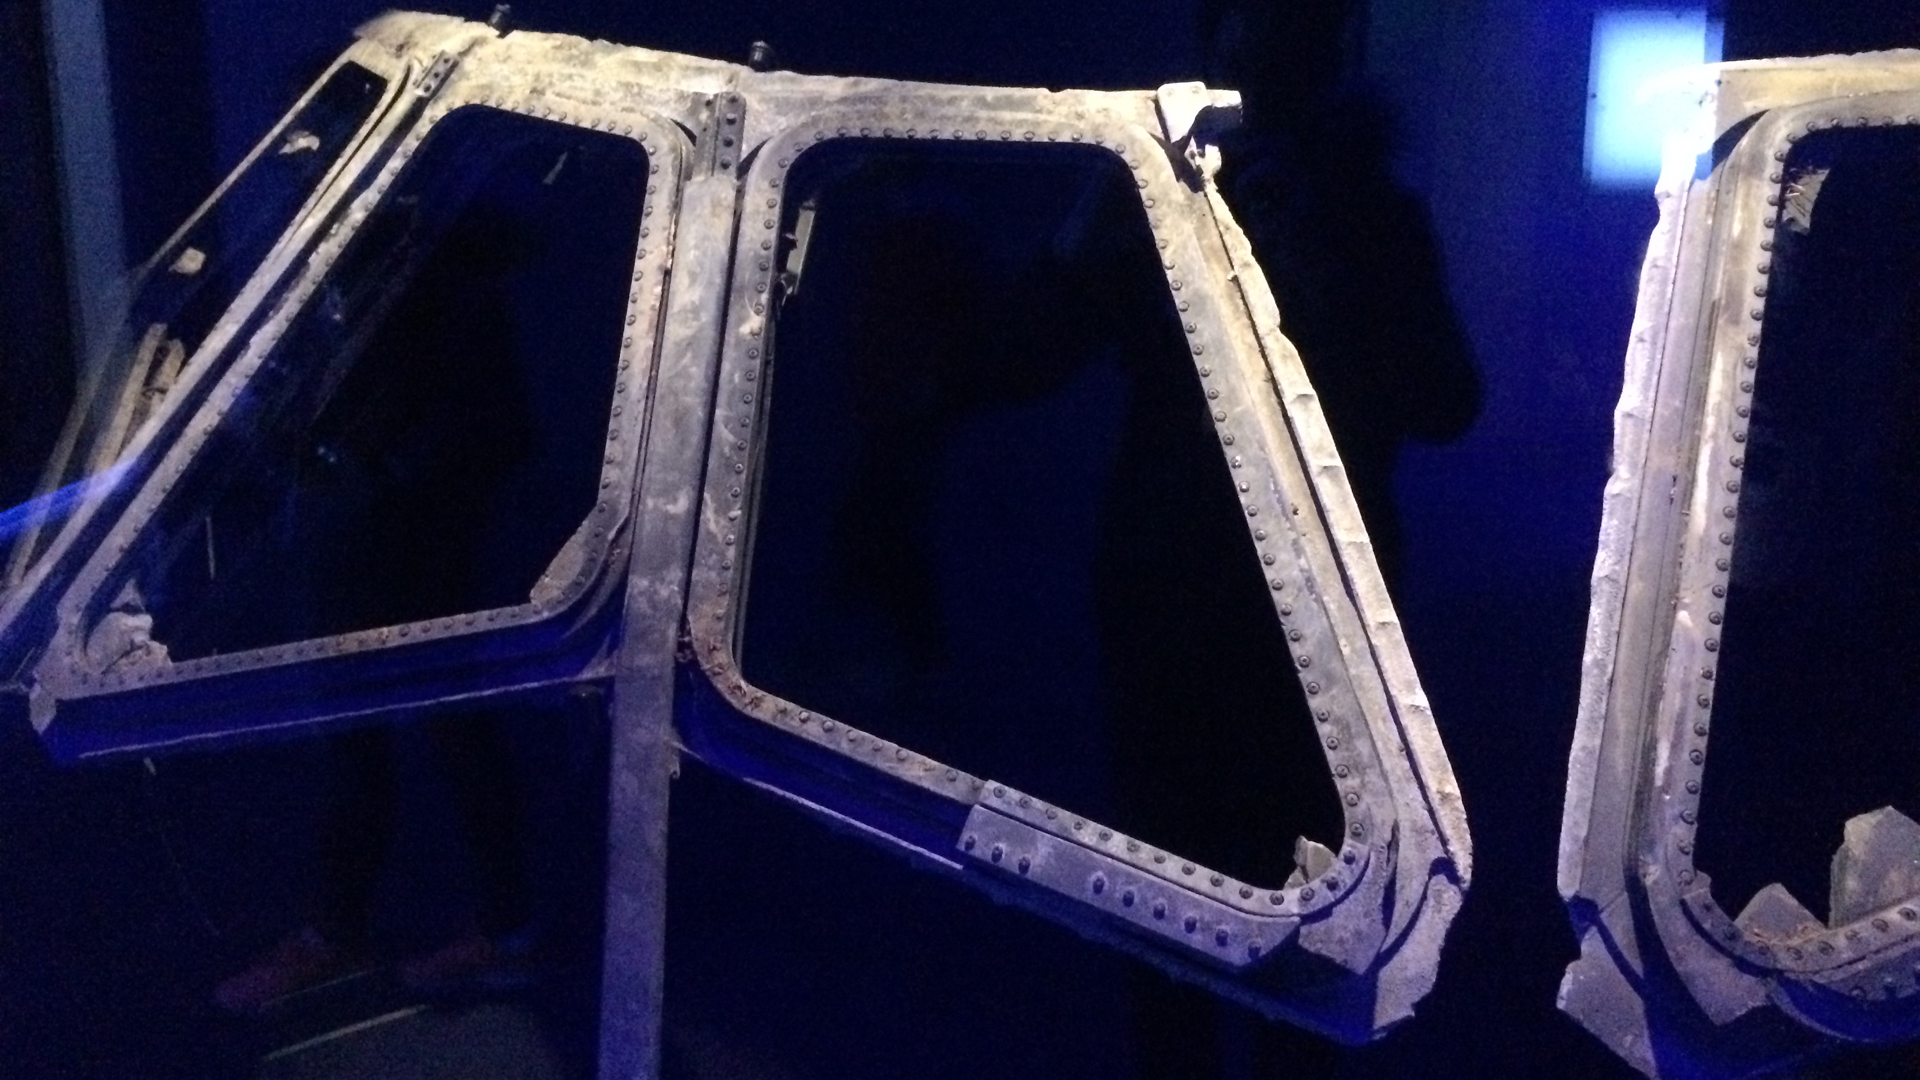 Im Kennedy Space Center in Orlando wird der toten Astronauten der „Columbia“ in einer besonderen Ausstellung gedacht. Zu den wenigen Wrackteilen, die geborgen werden konnten, gehört der Rahmen des Cockpit-Fensters.